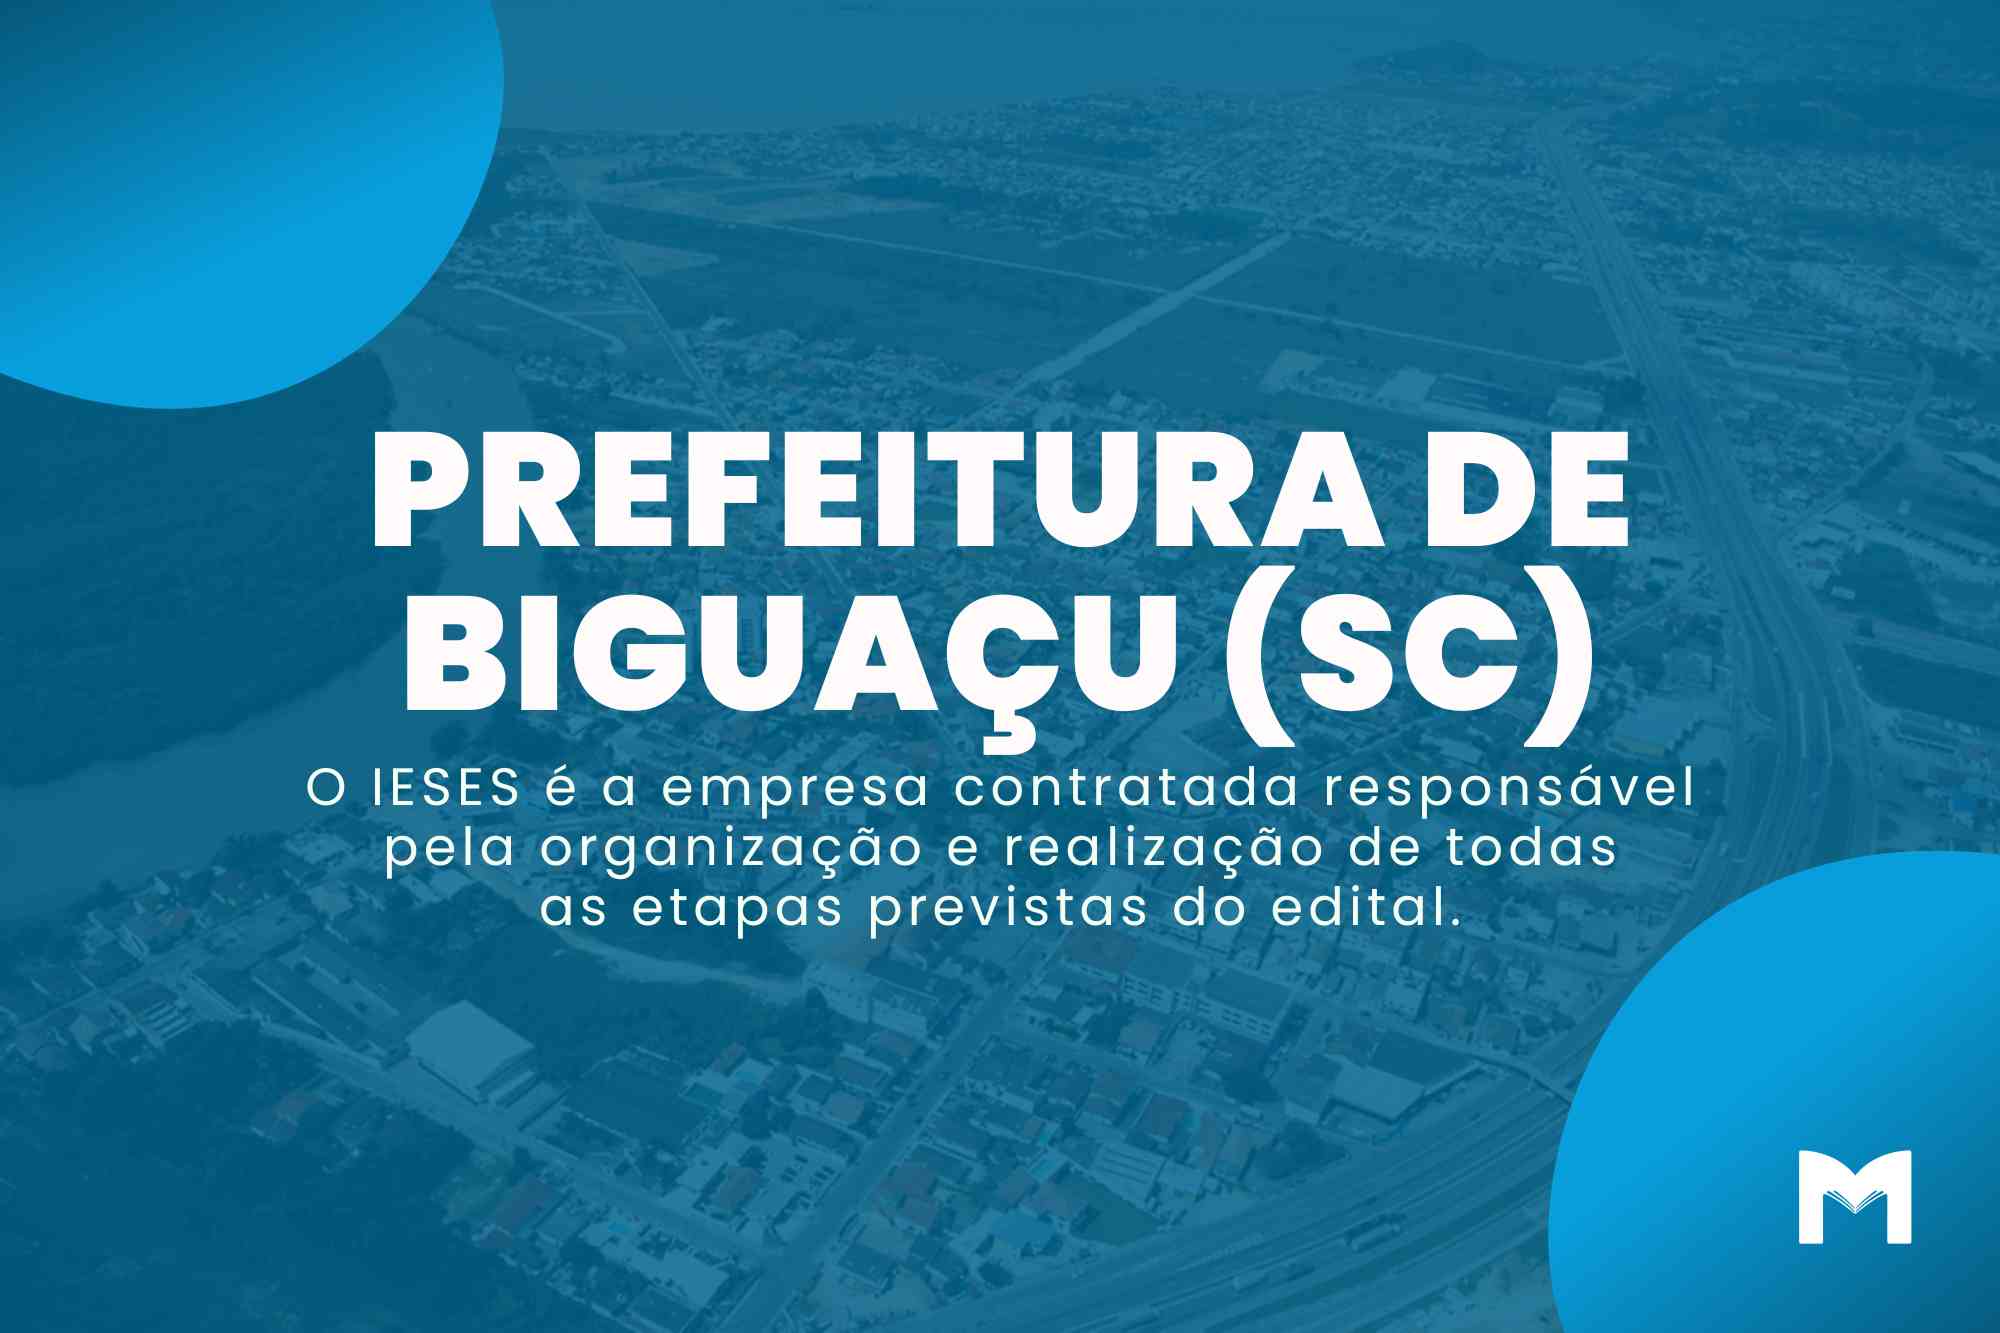 Prefeitura de Biguaçu SC: Prova do Processo Seletivo se aproxima!